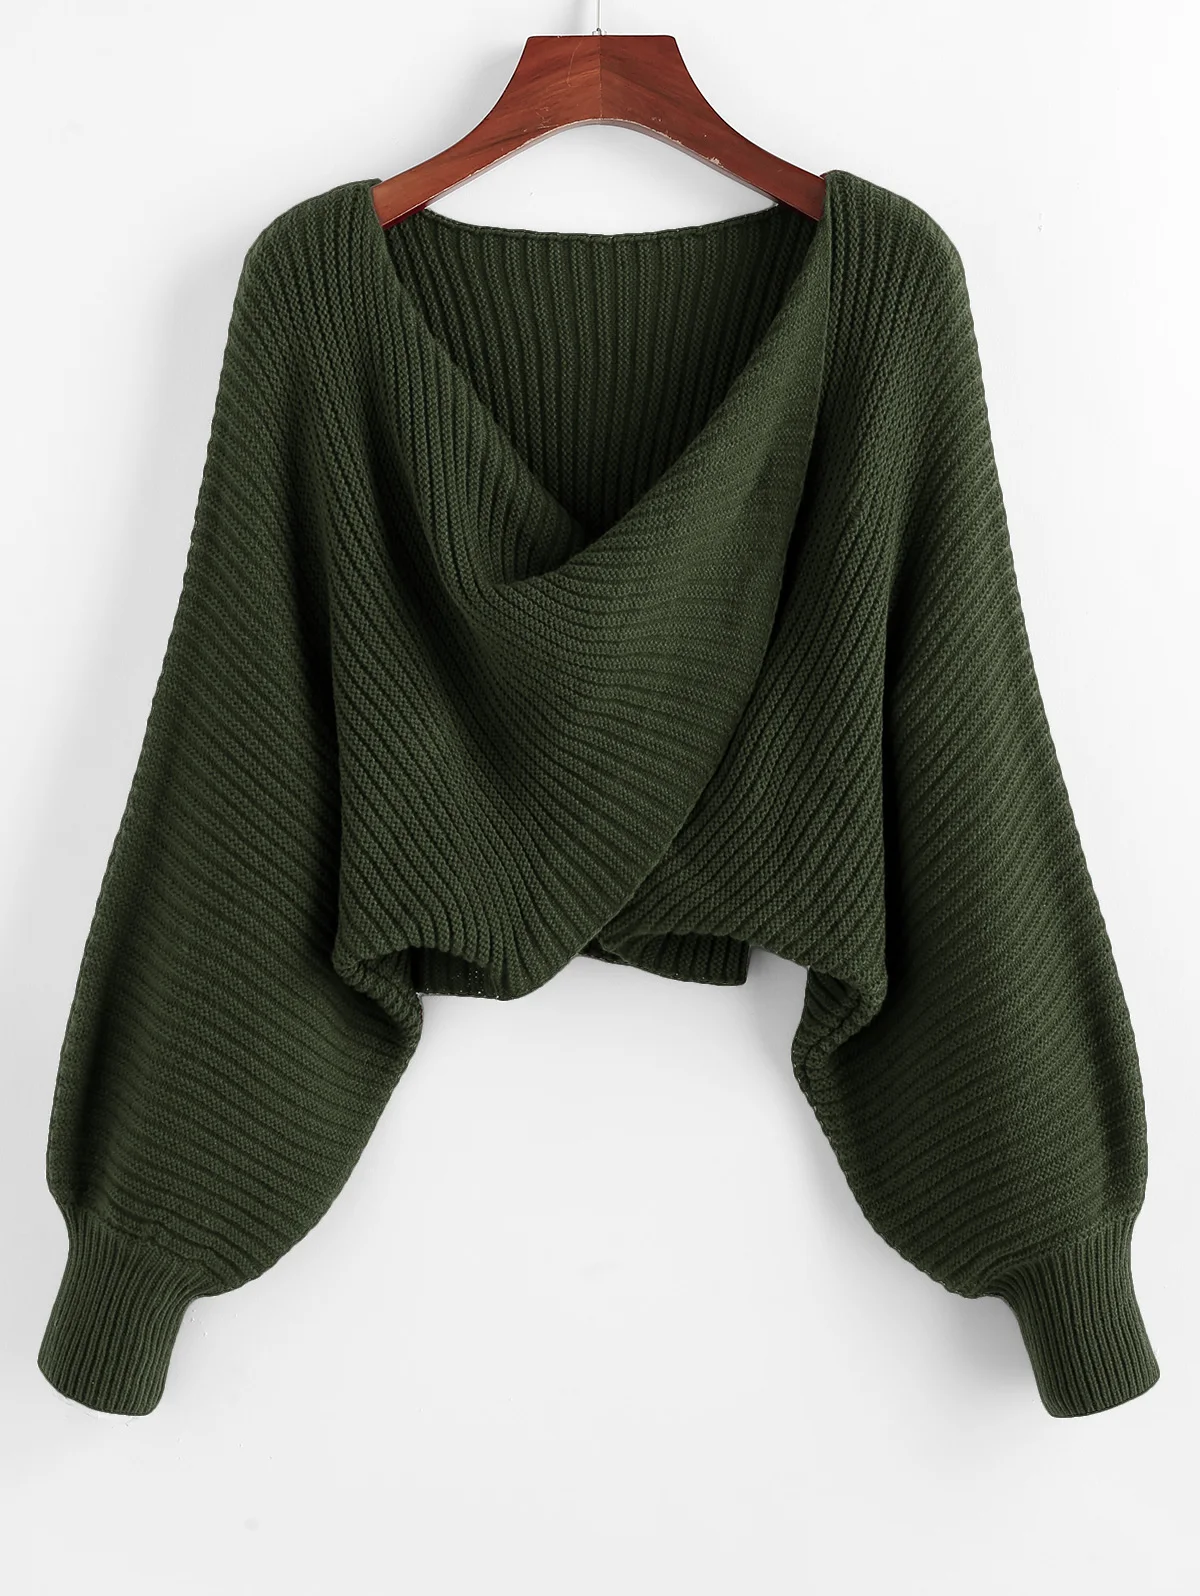 ZAFUL, крученый Асимметричный короткий свитер, Женский Теплый Однотонный пуловер, рукав летучая мышь, сексуальный свитер,, Осень-зима, повседневный женский свитер - Цвет: Dark Forest Green